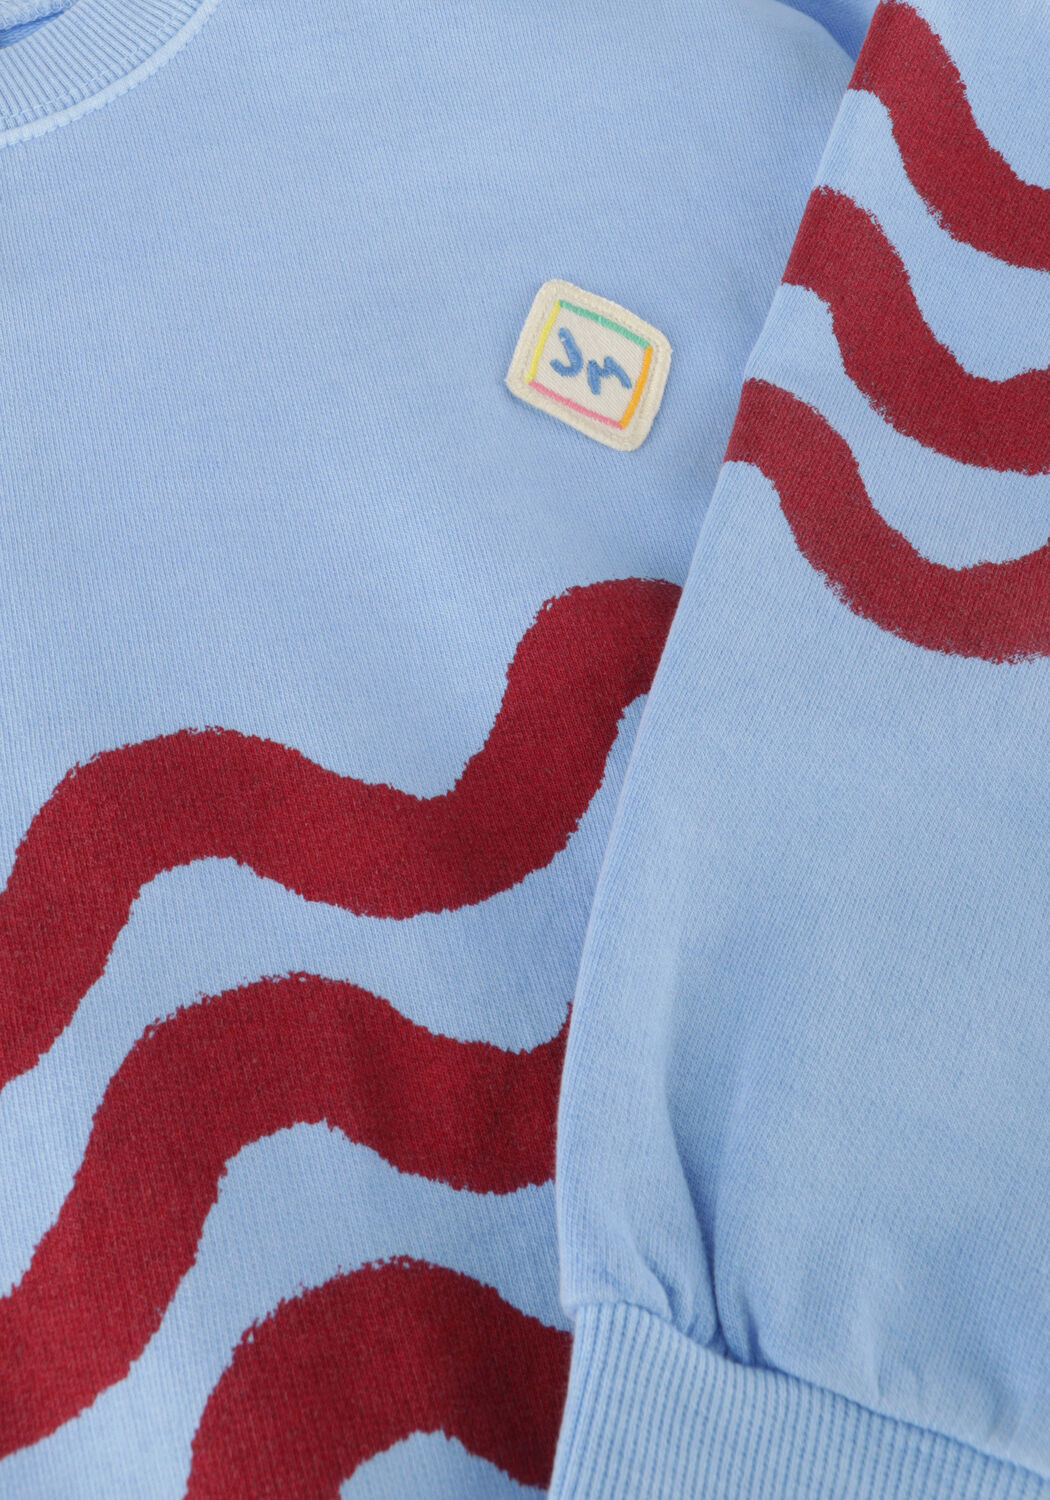 Jelly Mallow Jongens Truien & Vesten Wave Pigment Sweatshirt Blauw-3Y